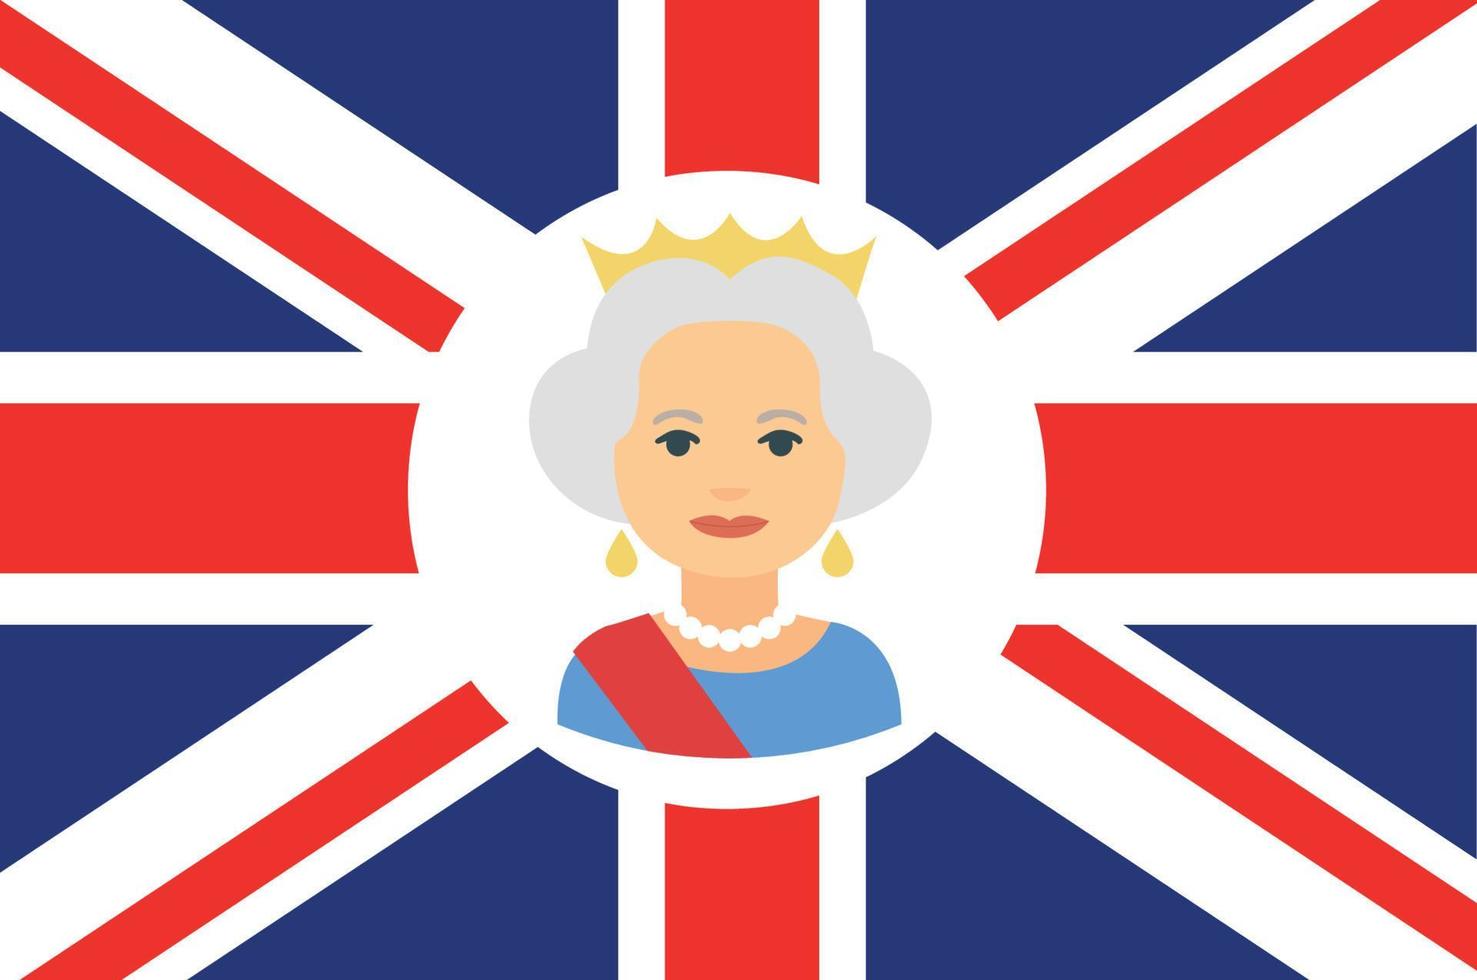 retrato de rosto de rainha elizabeth com bandeira britânica do reino unido nacional europa emblema ícone ilustração vetorial elemento de design abstrato vetor